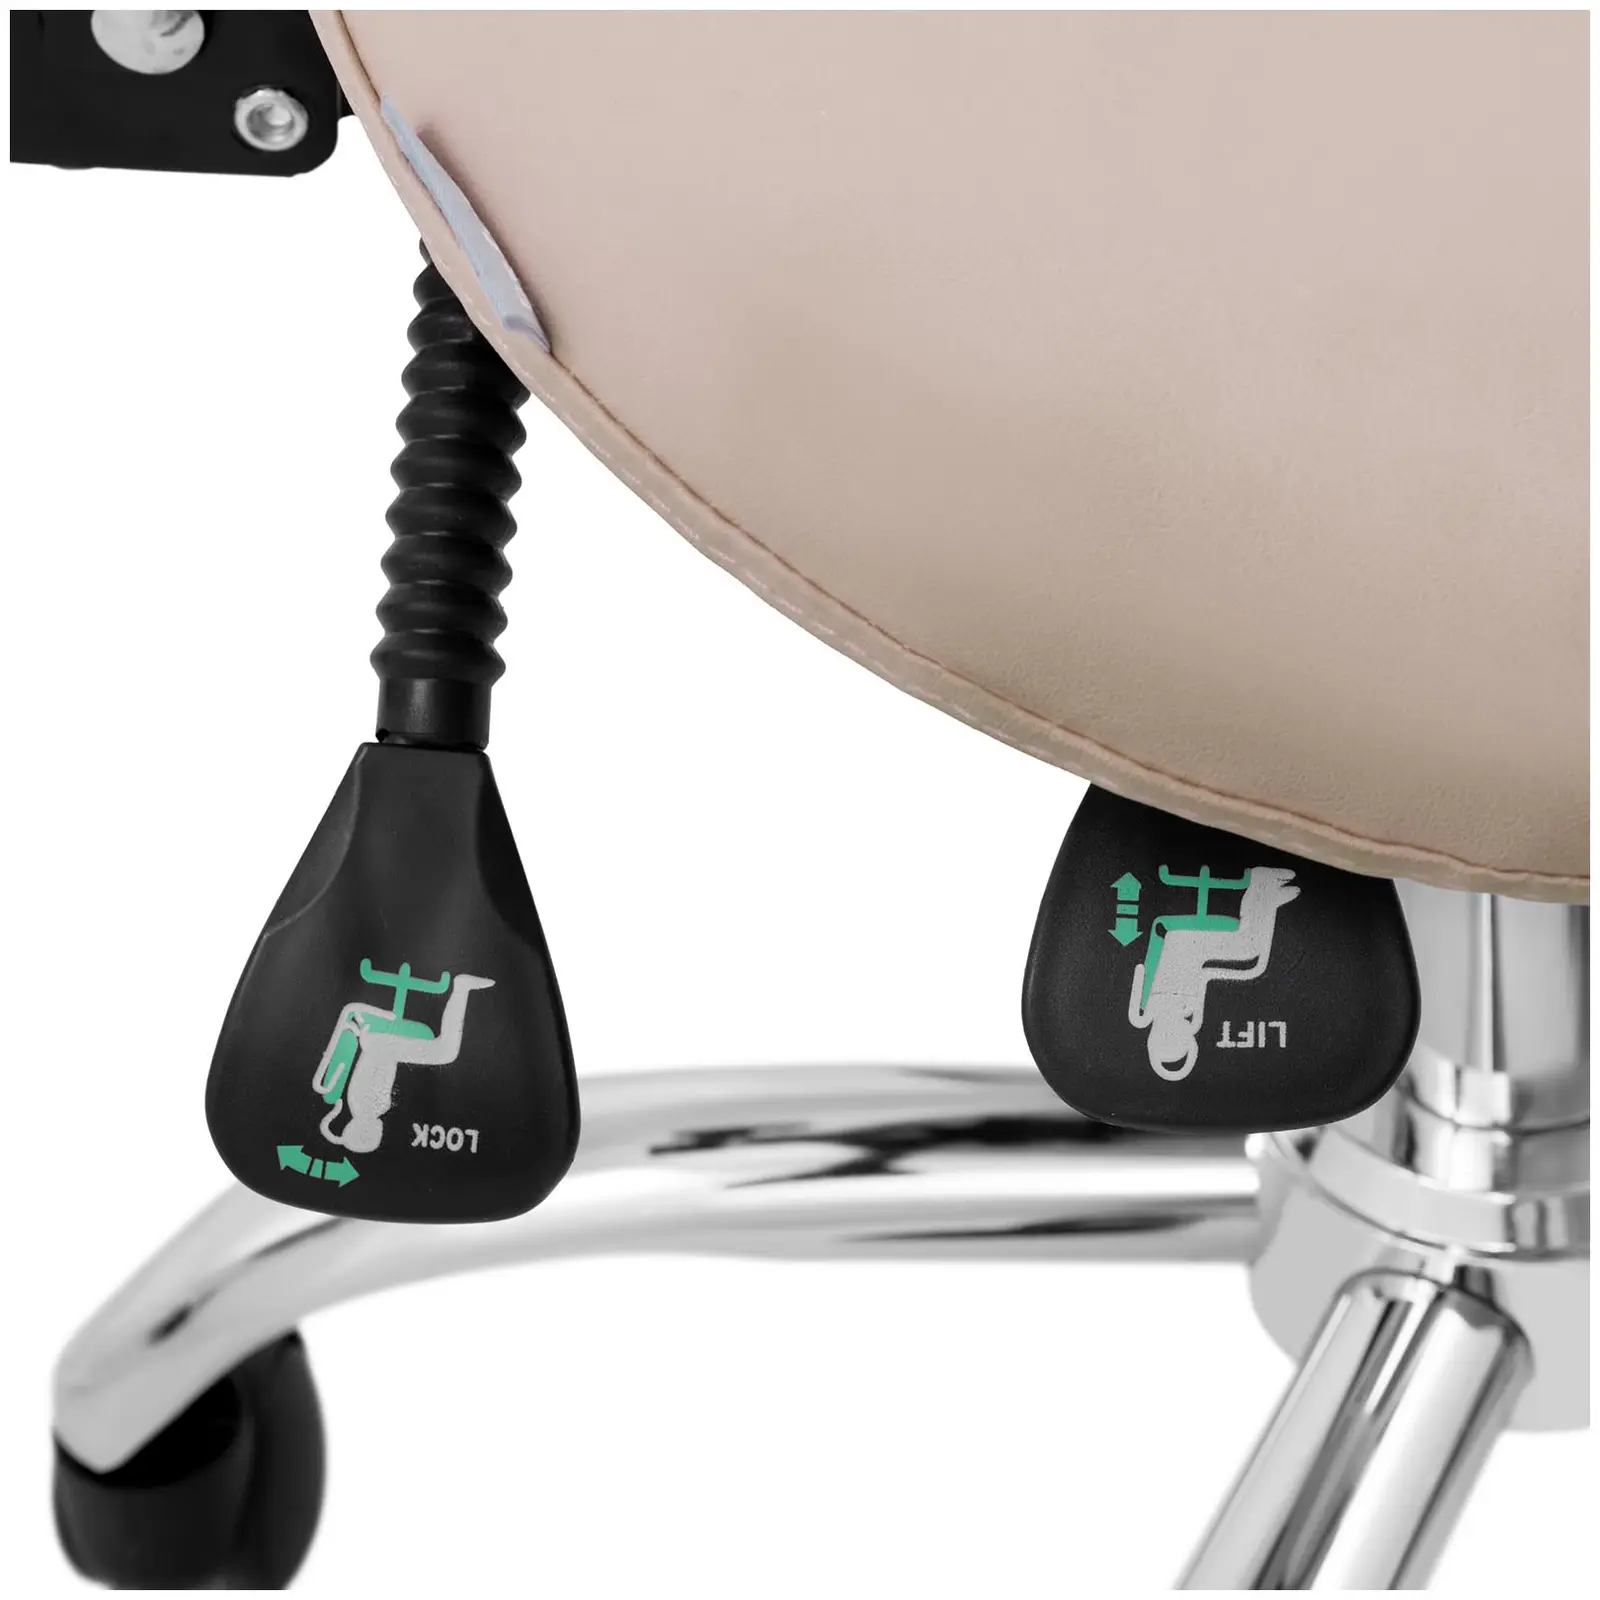 Scaun cu șa - spătar și înălțime scaun reglabile pe înălțime - 55 - 69 cm - 150 kg - Cream, Silver